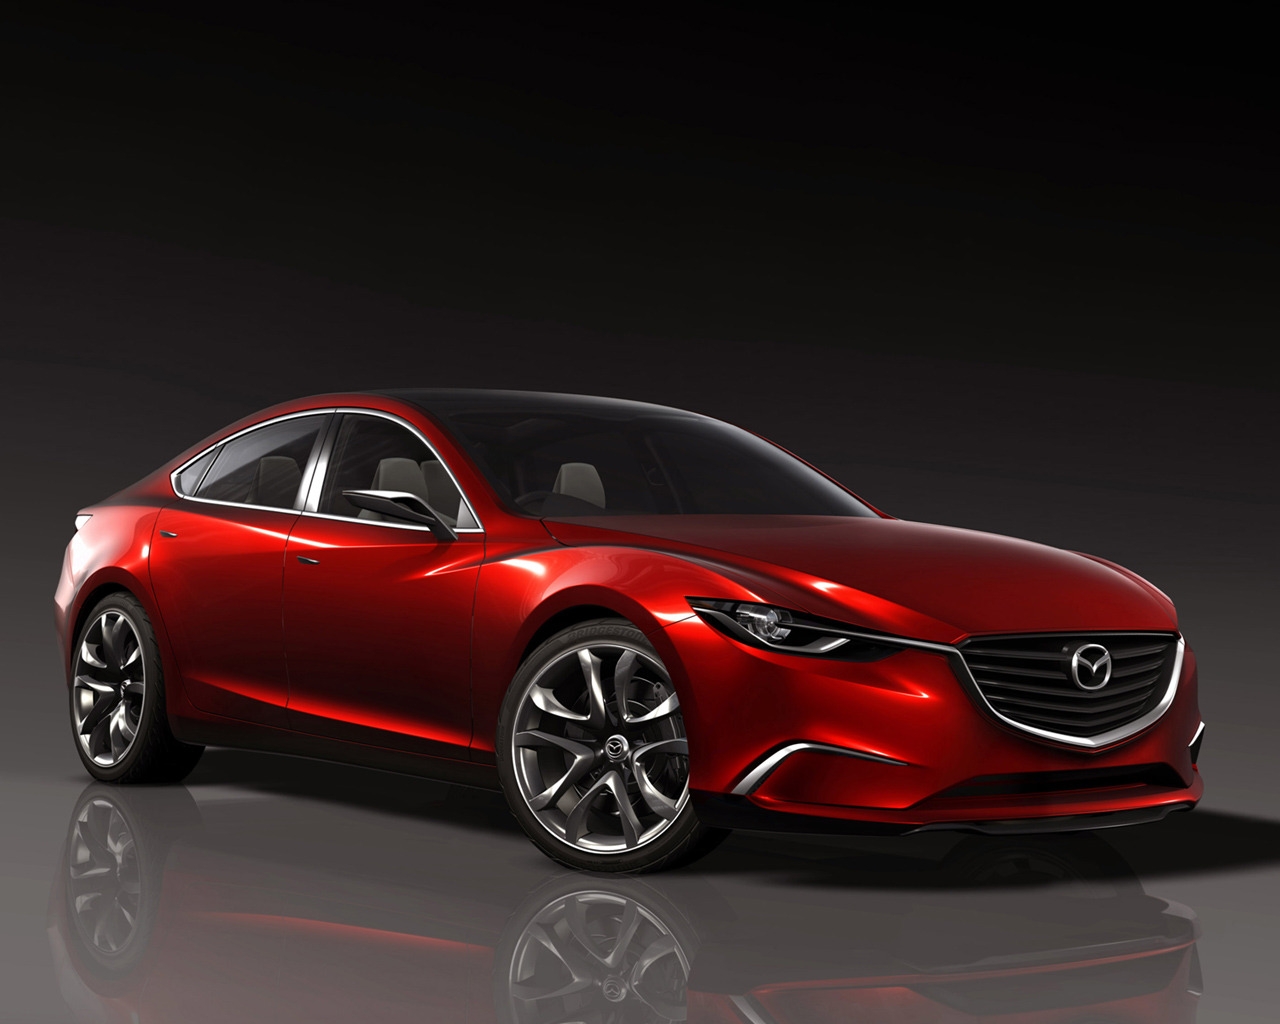 Mazda Takeri Concept for 1280 x 1024 resolution